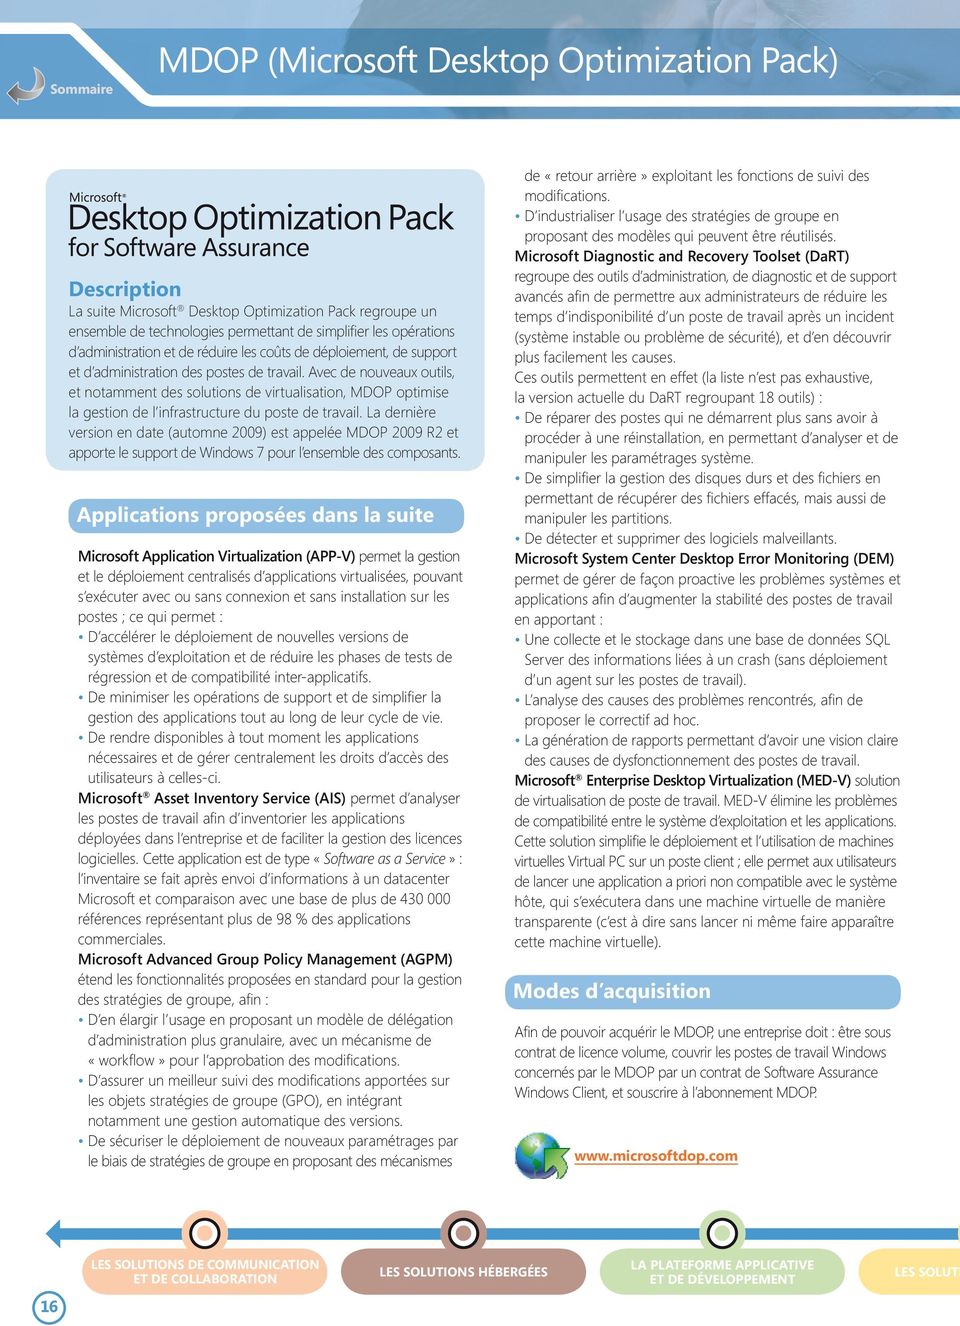 Avec de nouveaux outils, et notamment des solutions de virtualisation, MDOP optimise la gestion de l infrastructure du poste de travail.